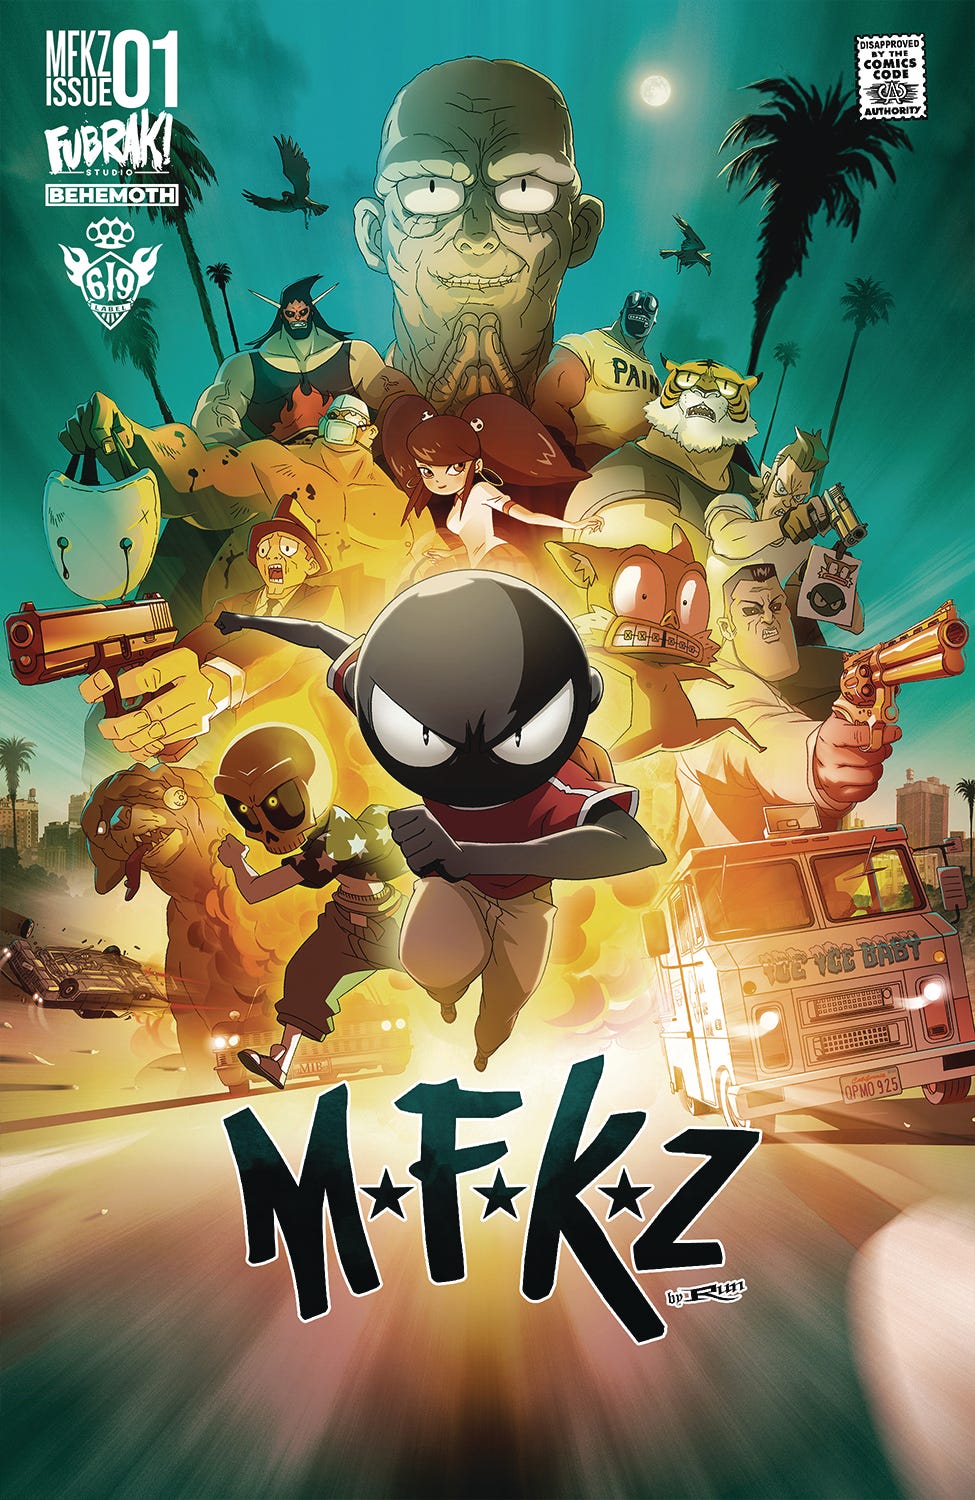 MFKZ #1 (Cover A)